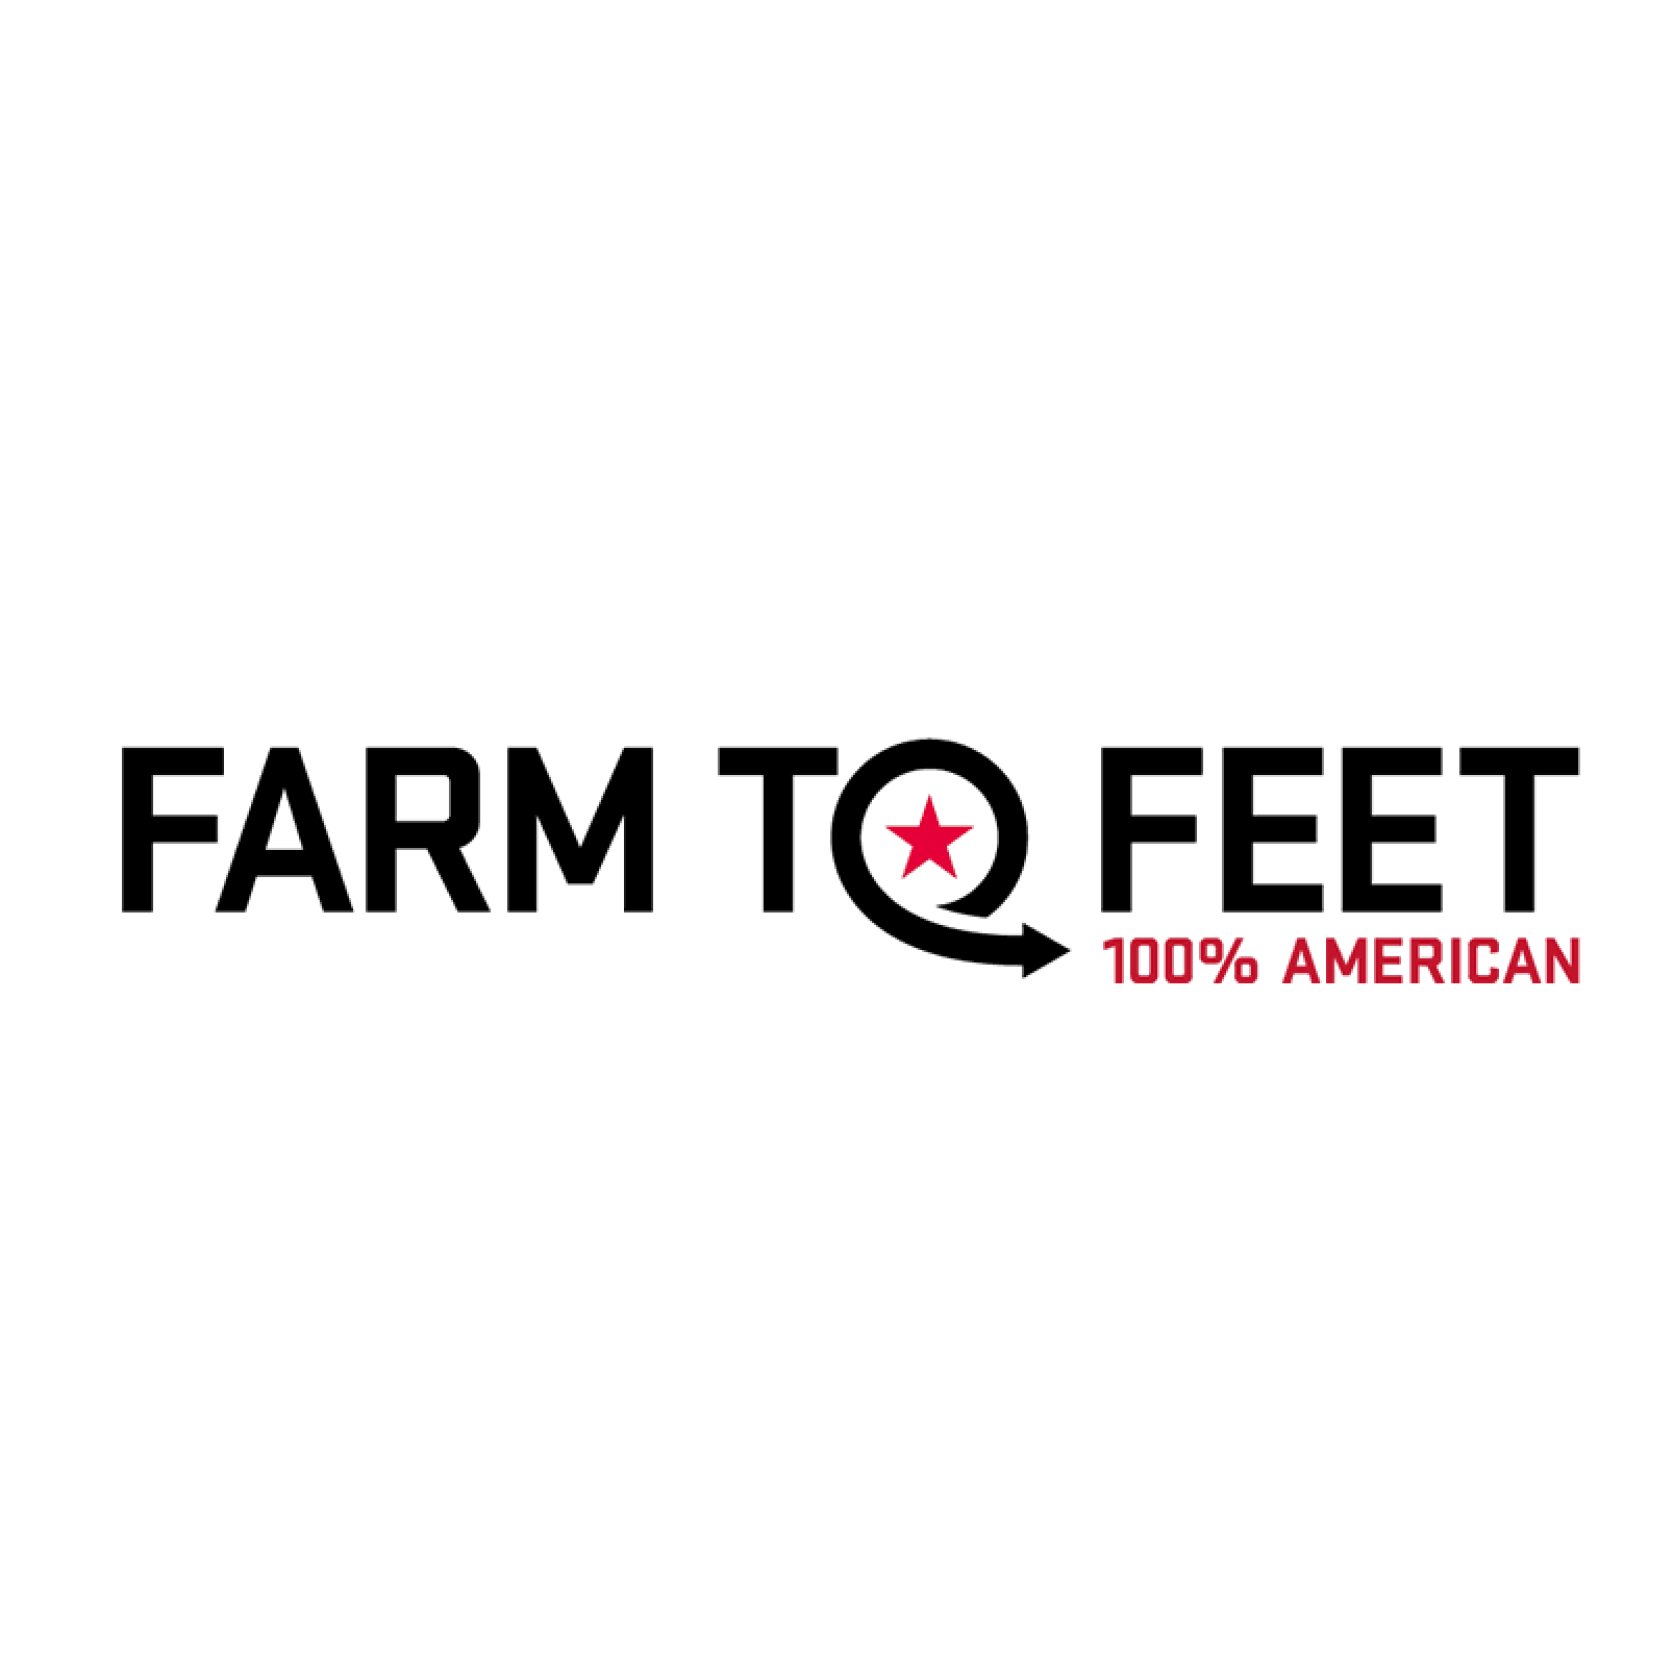 Farm to Feet.jpg